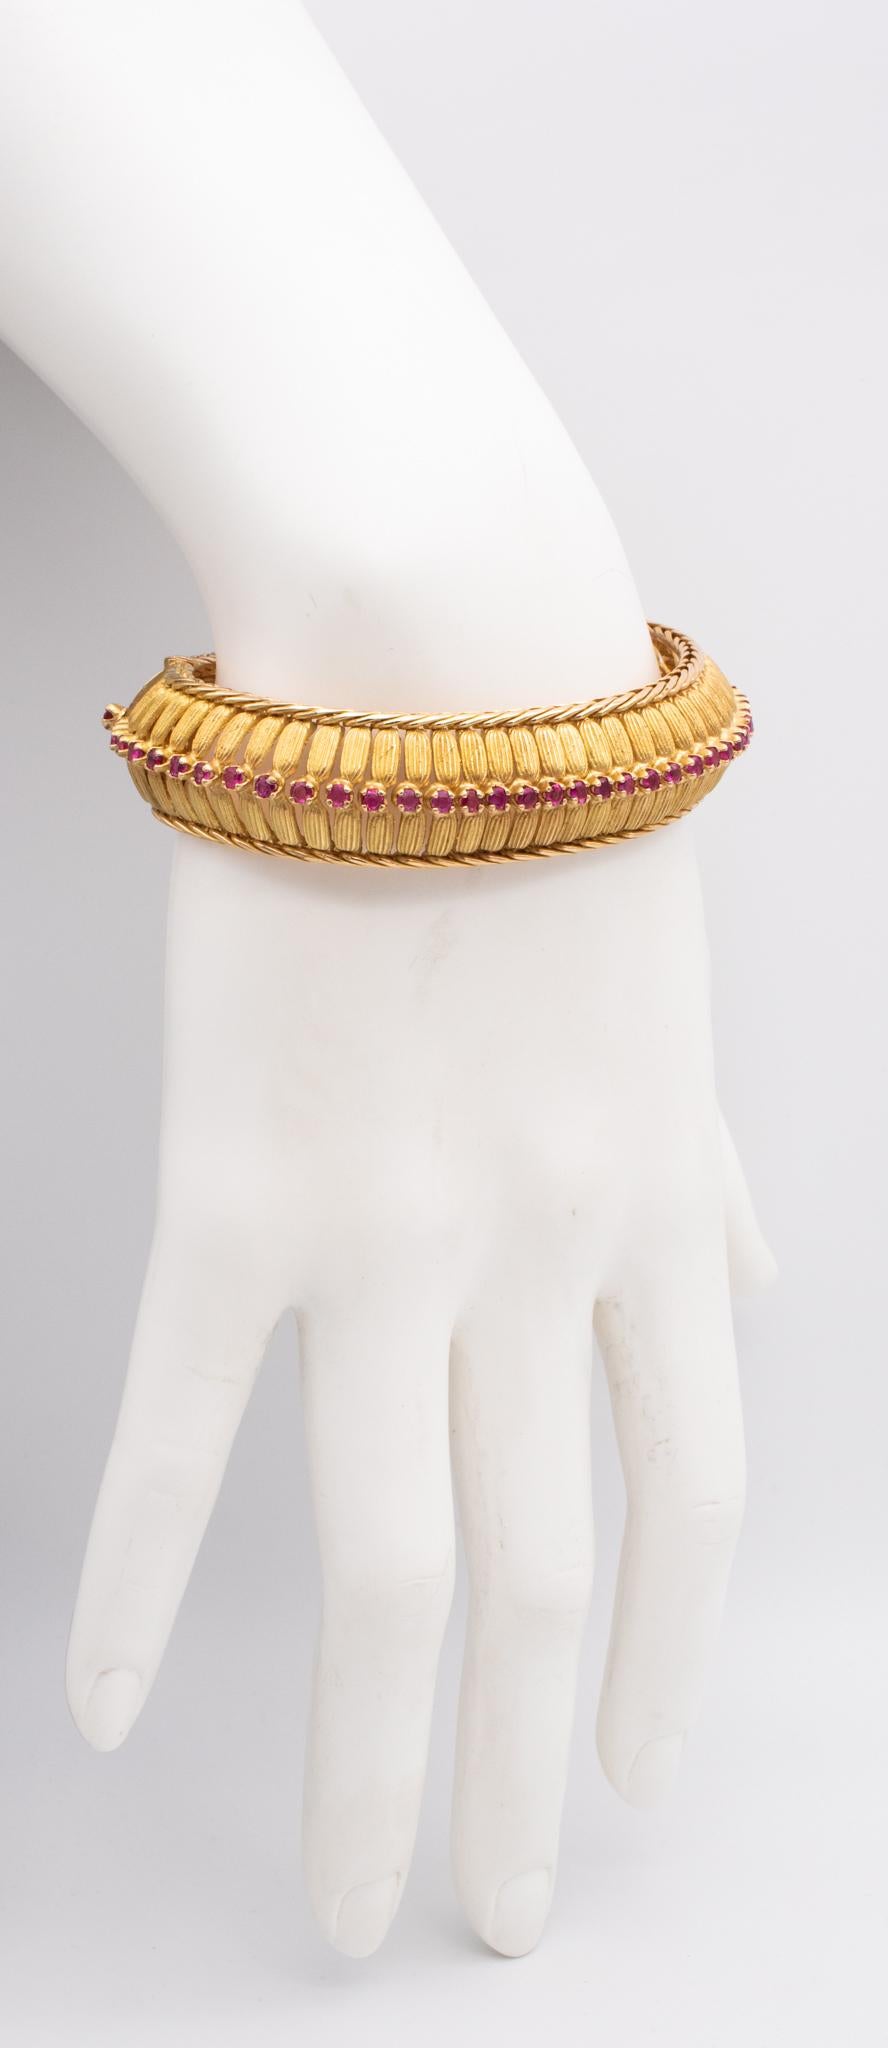 Ein in Turin entworfenes Armband mit Juwelen. 

Schönes Stück, entworfen mit sehr schlanken und klaren Linien in Turin Italien, während der Nachkriegszeit, zurück im Jahr 1955. Dieses Schmuckarmband wurde aus massivem, reichhaltigem 18-karätigem